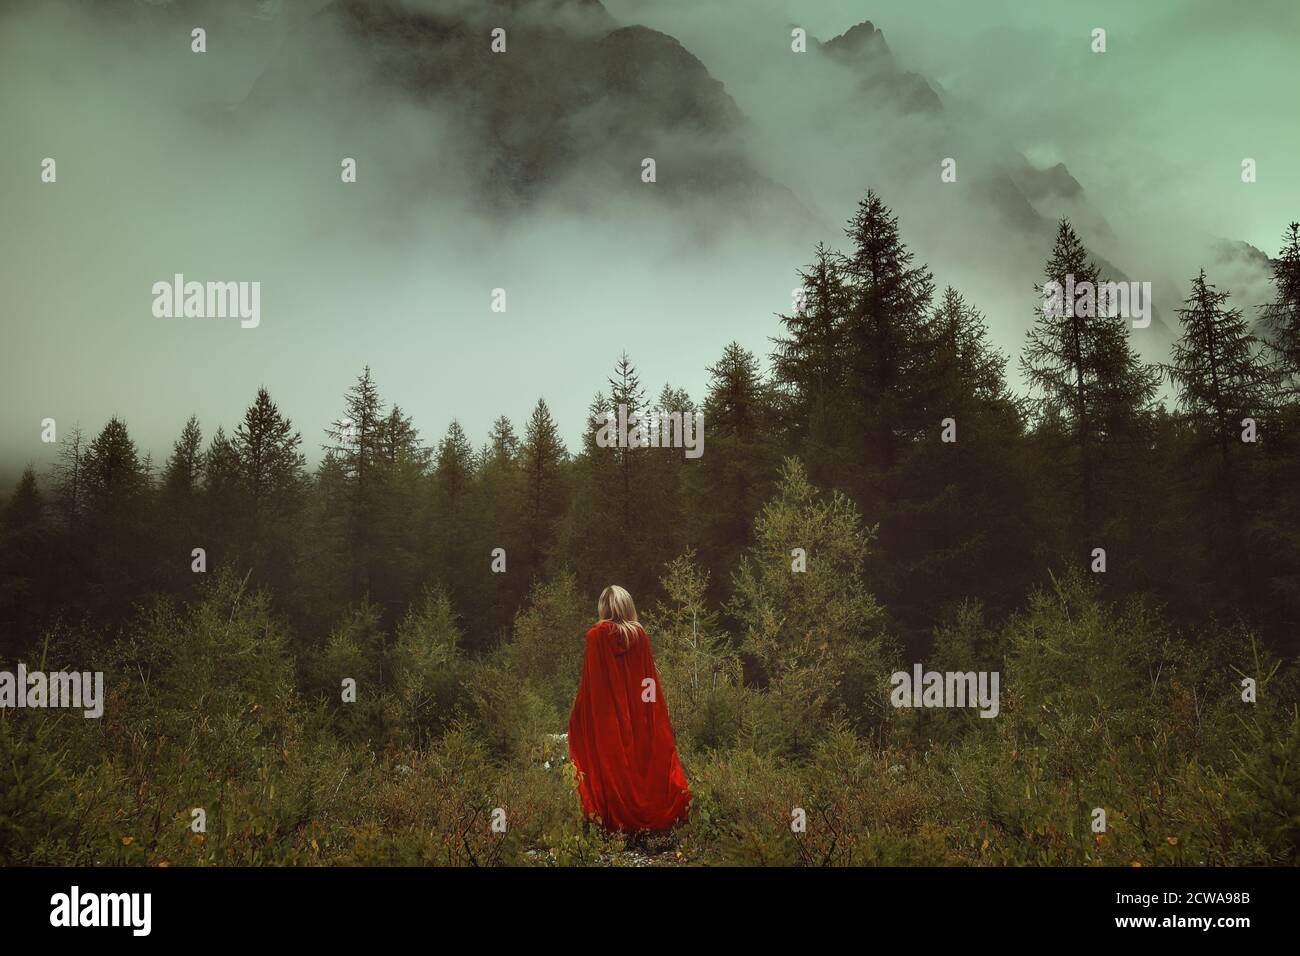 Frau mit rotem Mantel in einem nebligen Wald Stockfoto